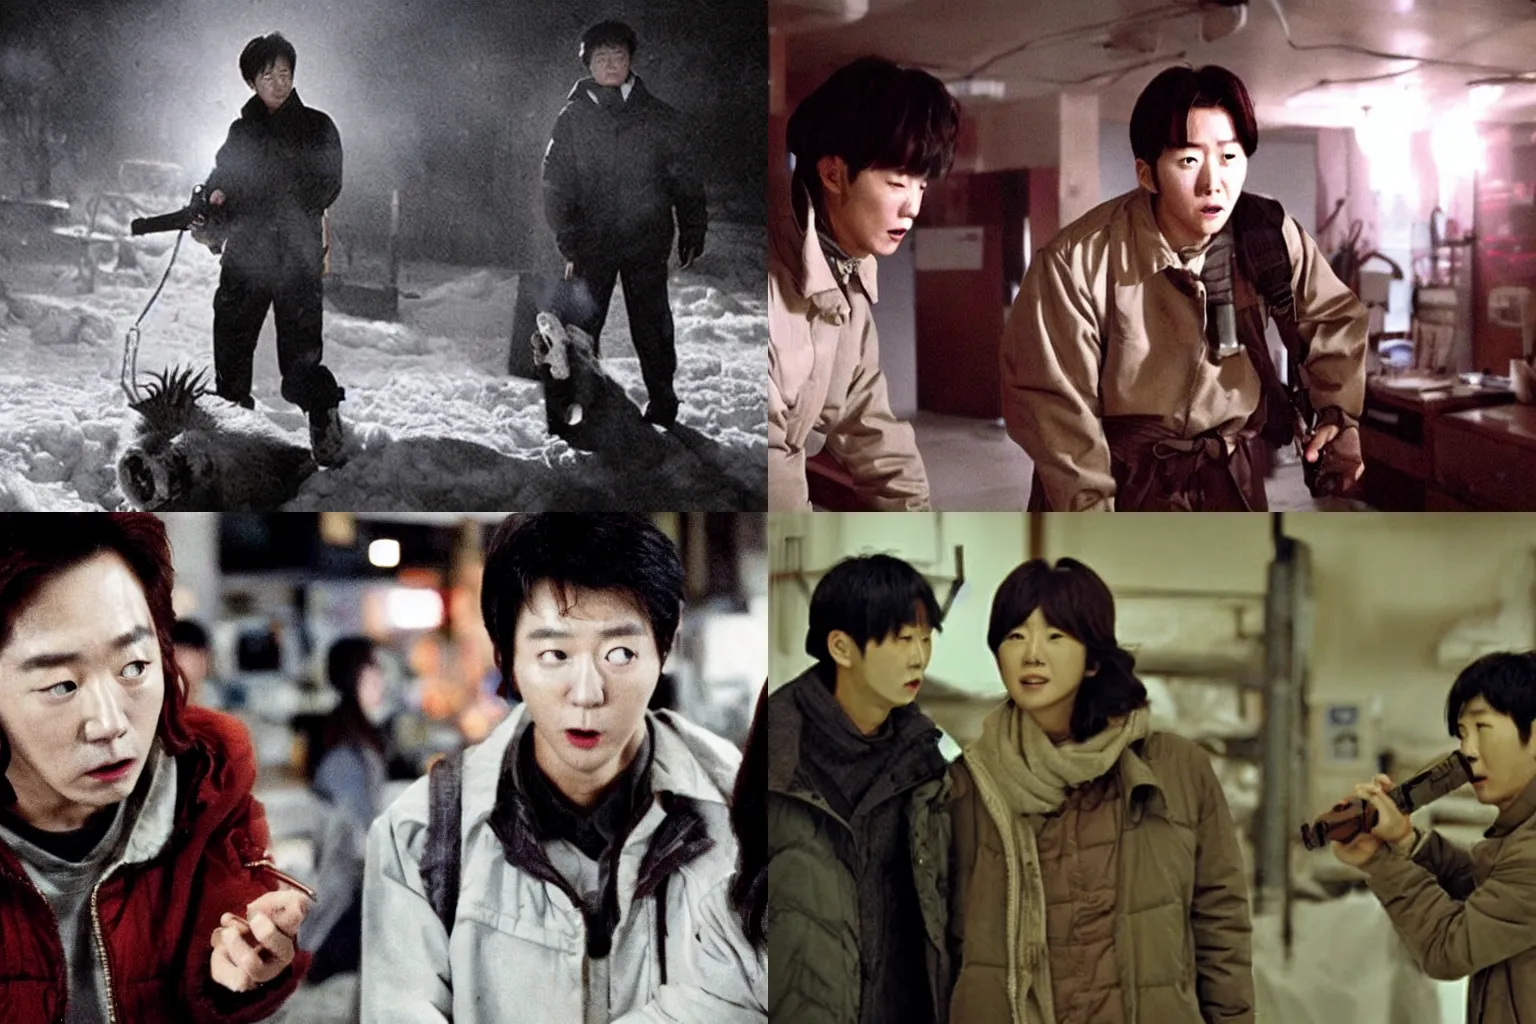 Prompt: korean film still from korean adaptation of john carpenter's the thing